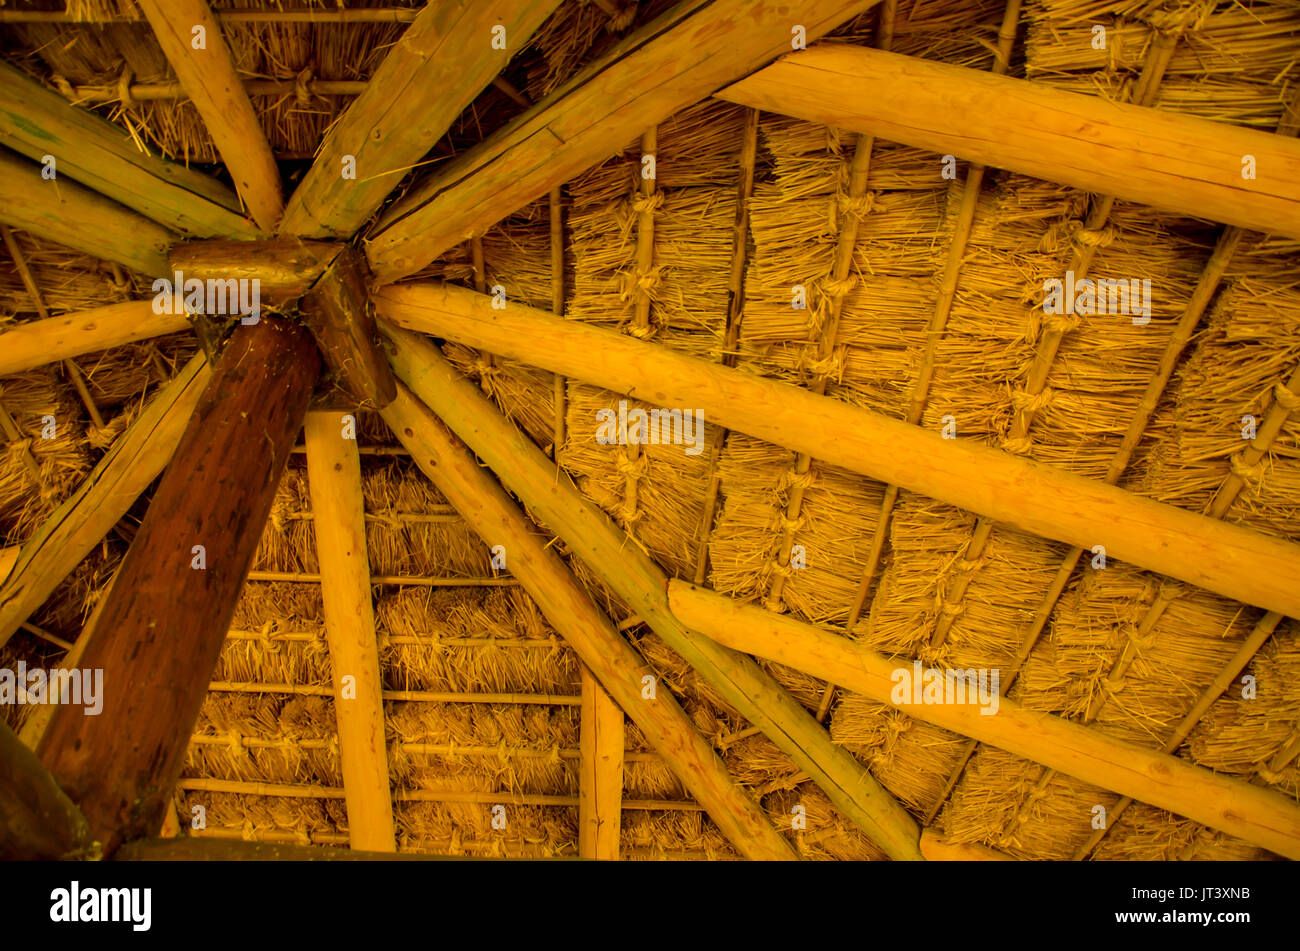 Innere Baum Dach aus Holz, warmen Farben, organischen vintage Gebäudestruktur, Low Angle View Stockfoto